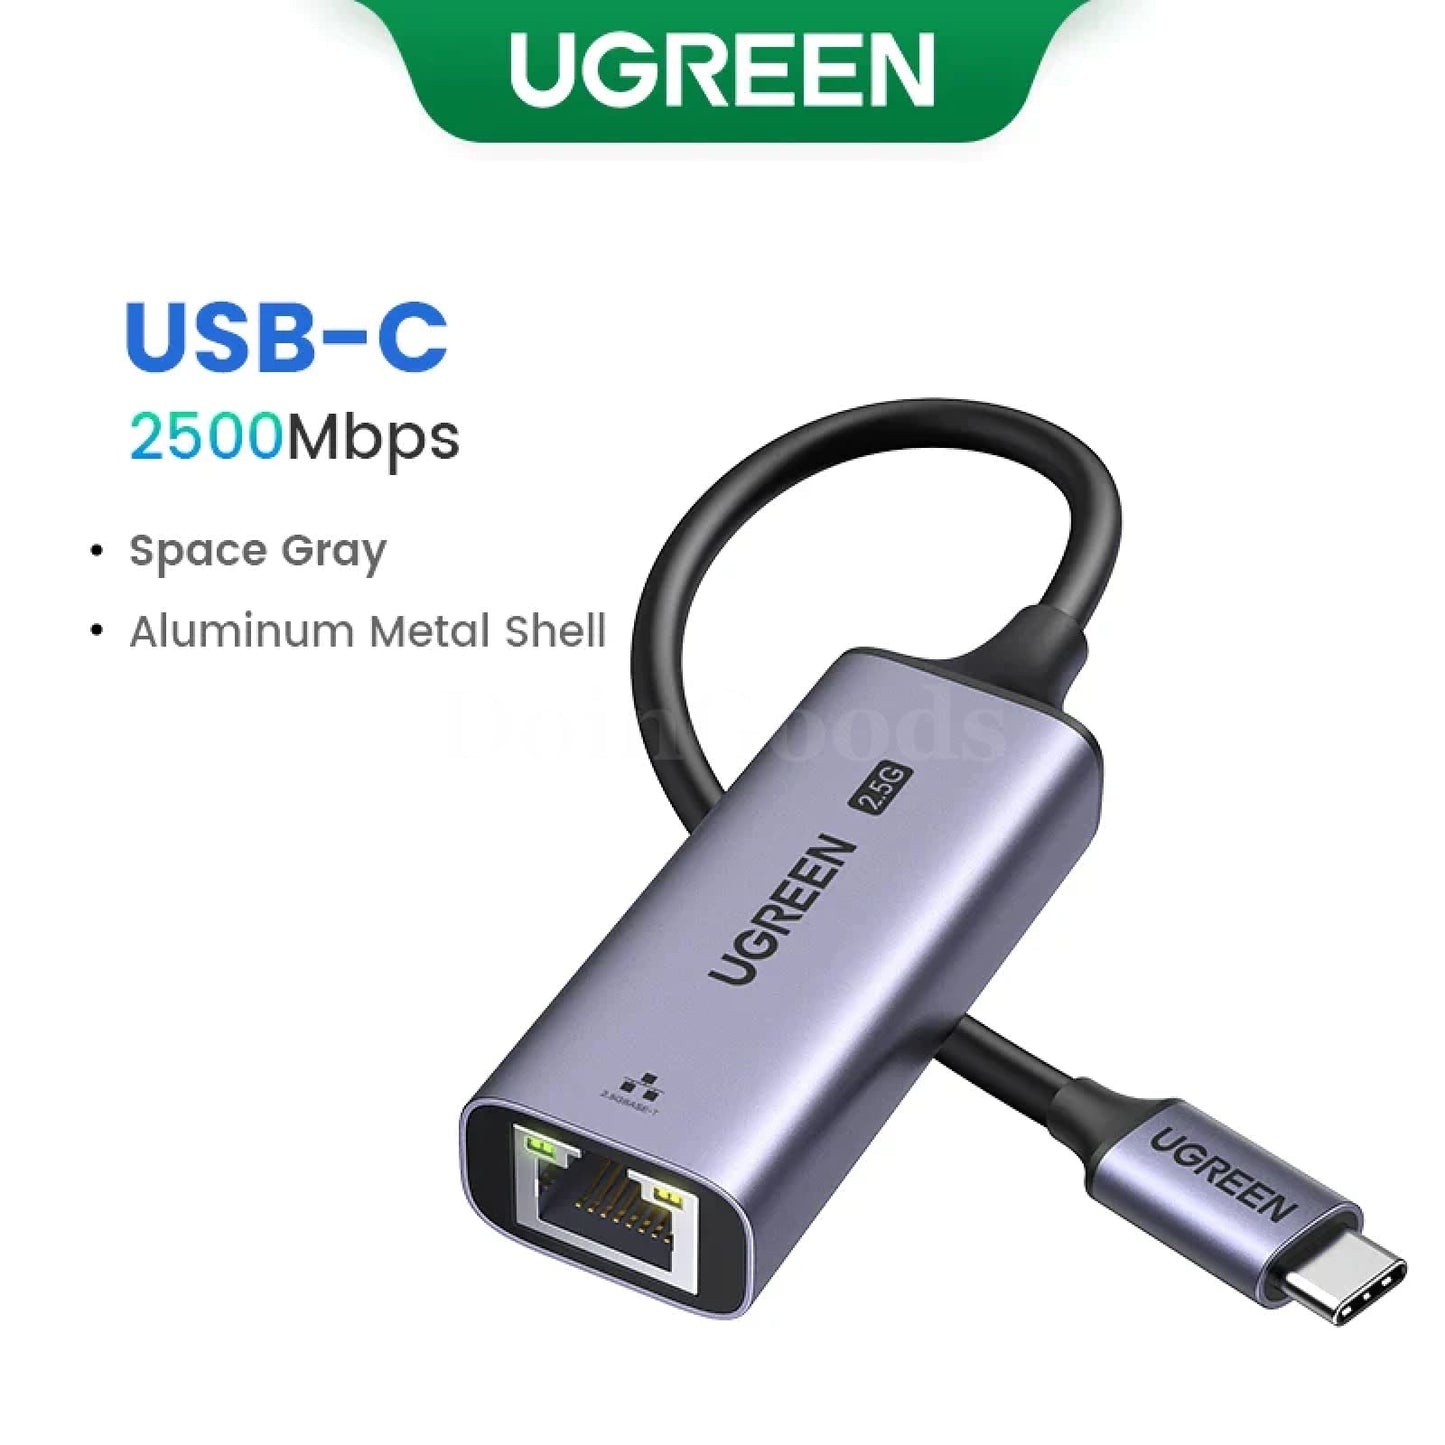 Ugreen Usb C Ethernet Adapter 1000/100Mbps Lan Rj45 For Laptop Macbook Usb-C 2500Mbps 301635